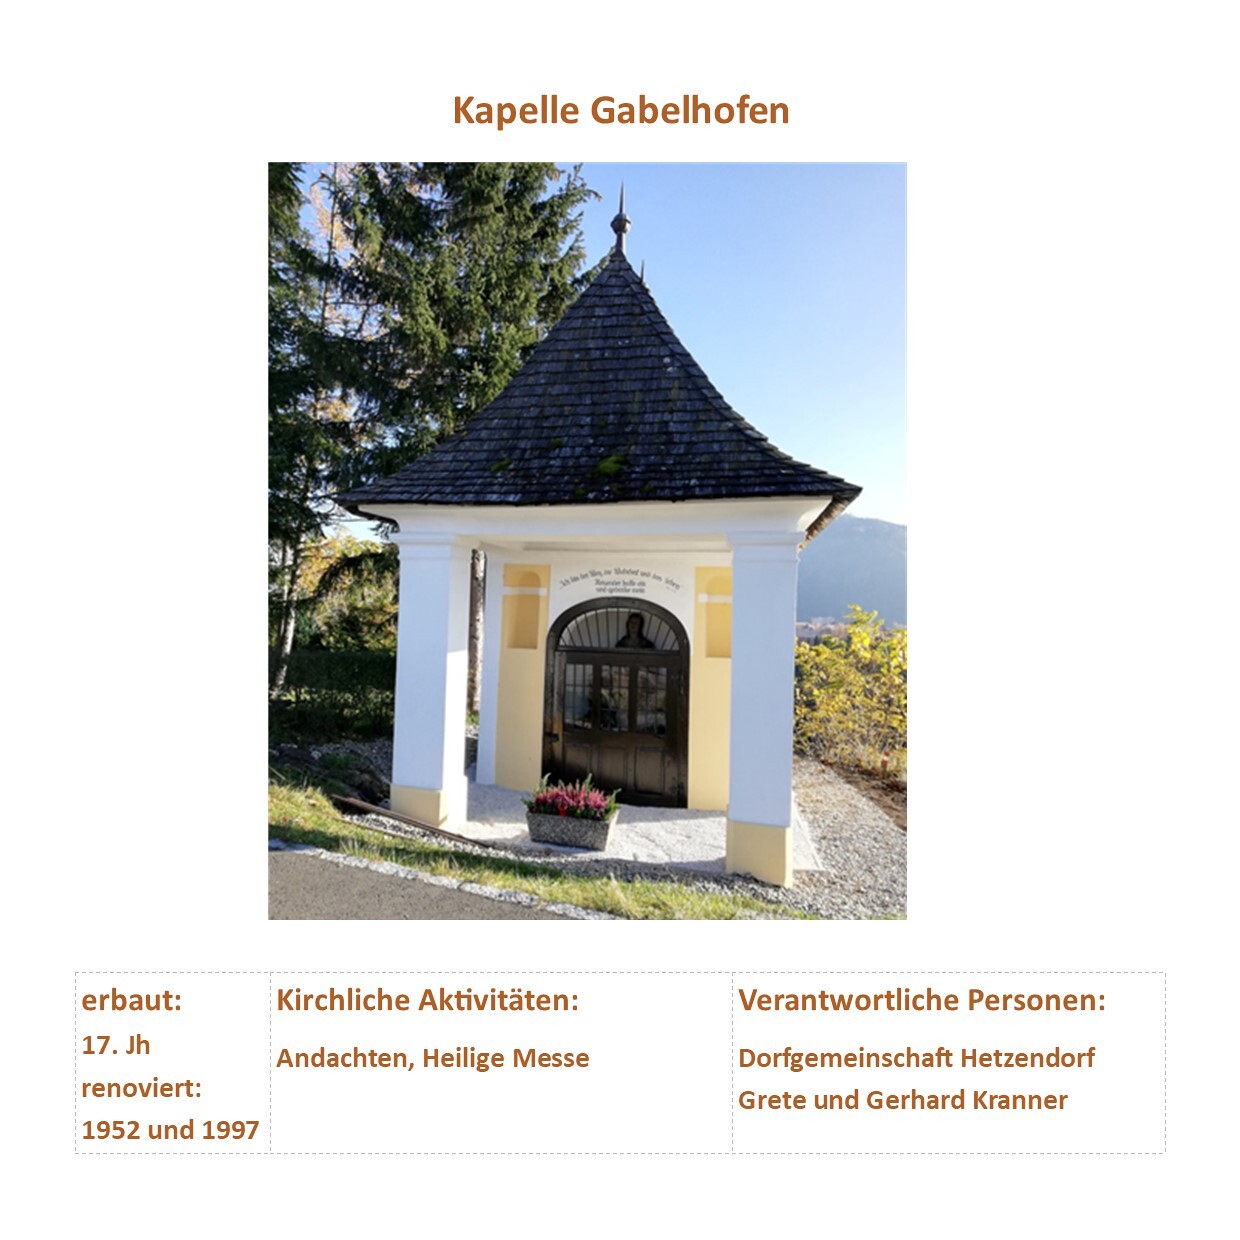 Kapelle Gabelhofen